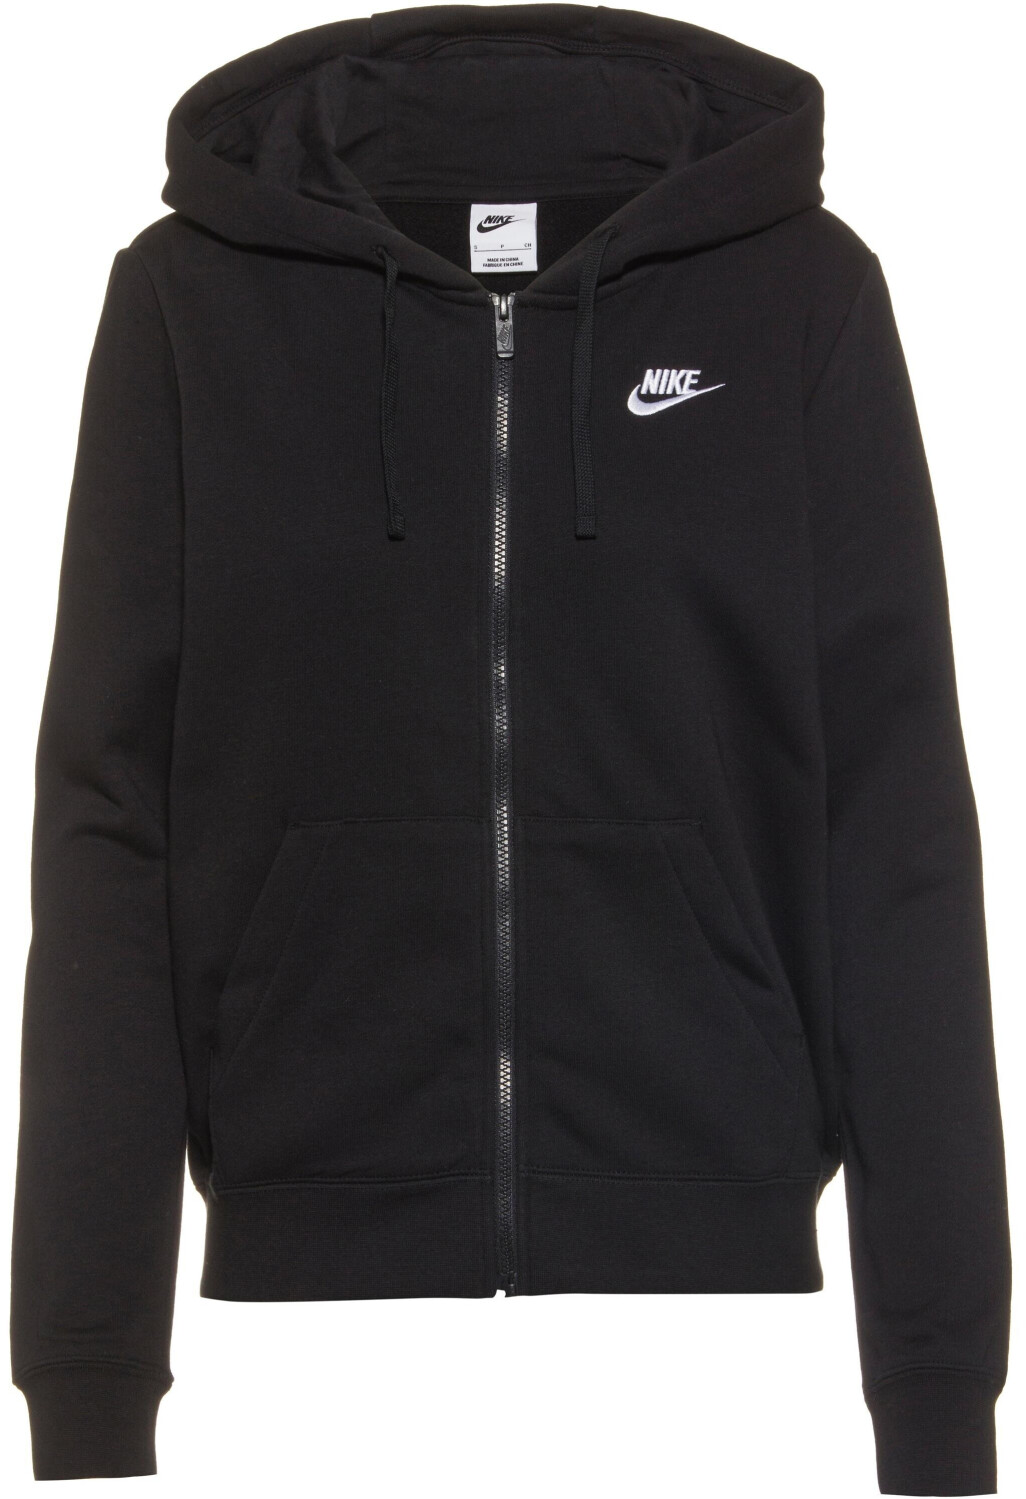 Nike Sportswear Club Fleece FZ Hoodie € Preisvergleich (DQ5471) | 39,99 bei ab W